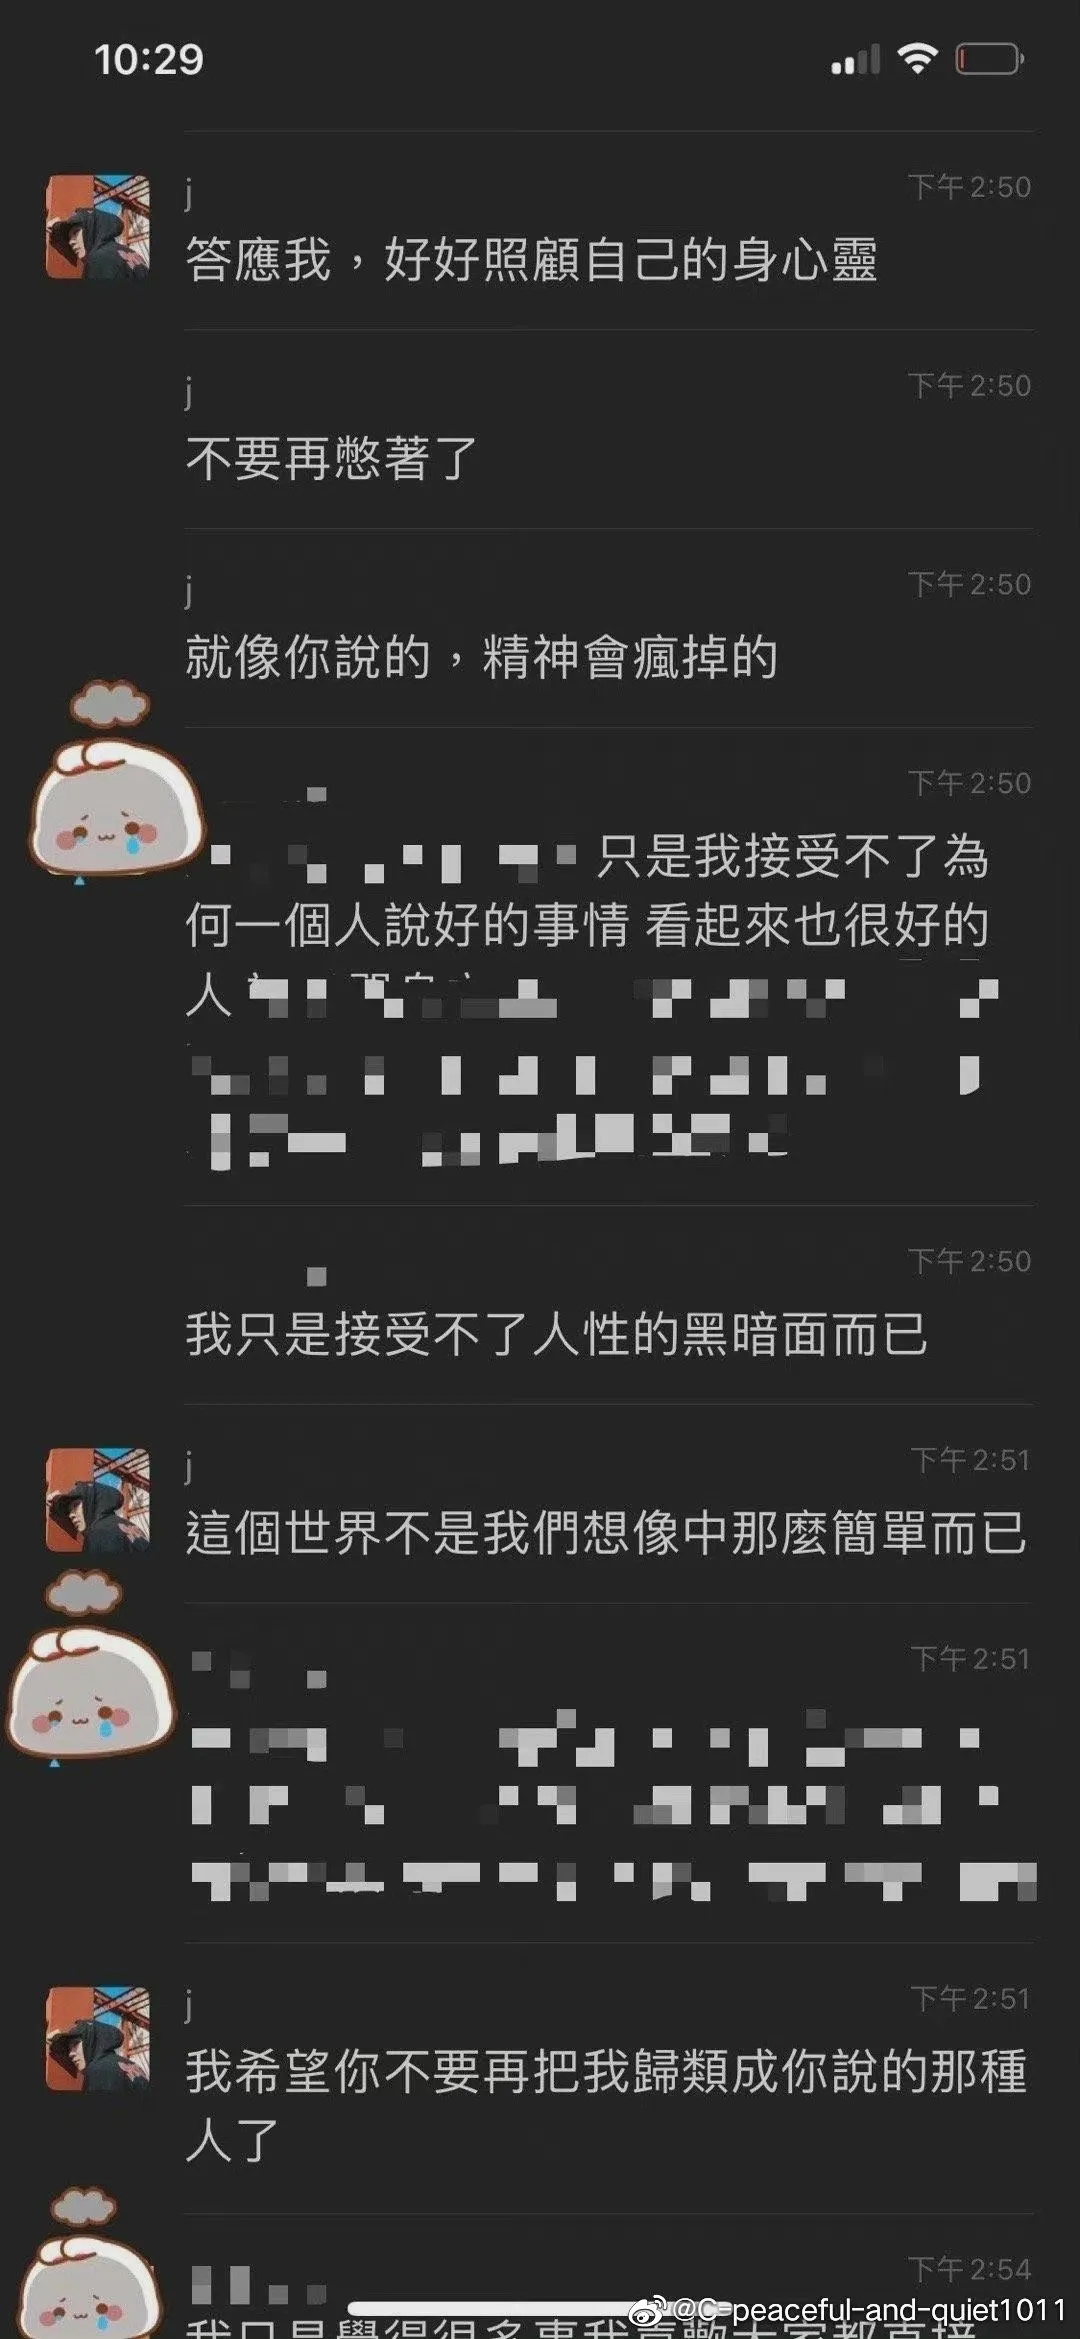 女网友再晒与林俊杰聊天截图，称愿对爆料负责，怒斥他爱玩冷暴力